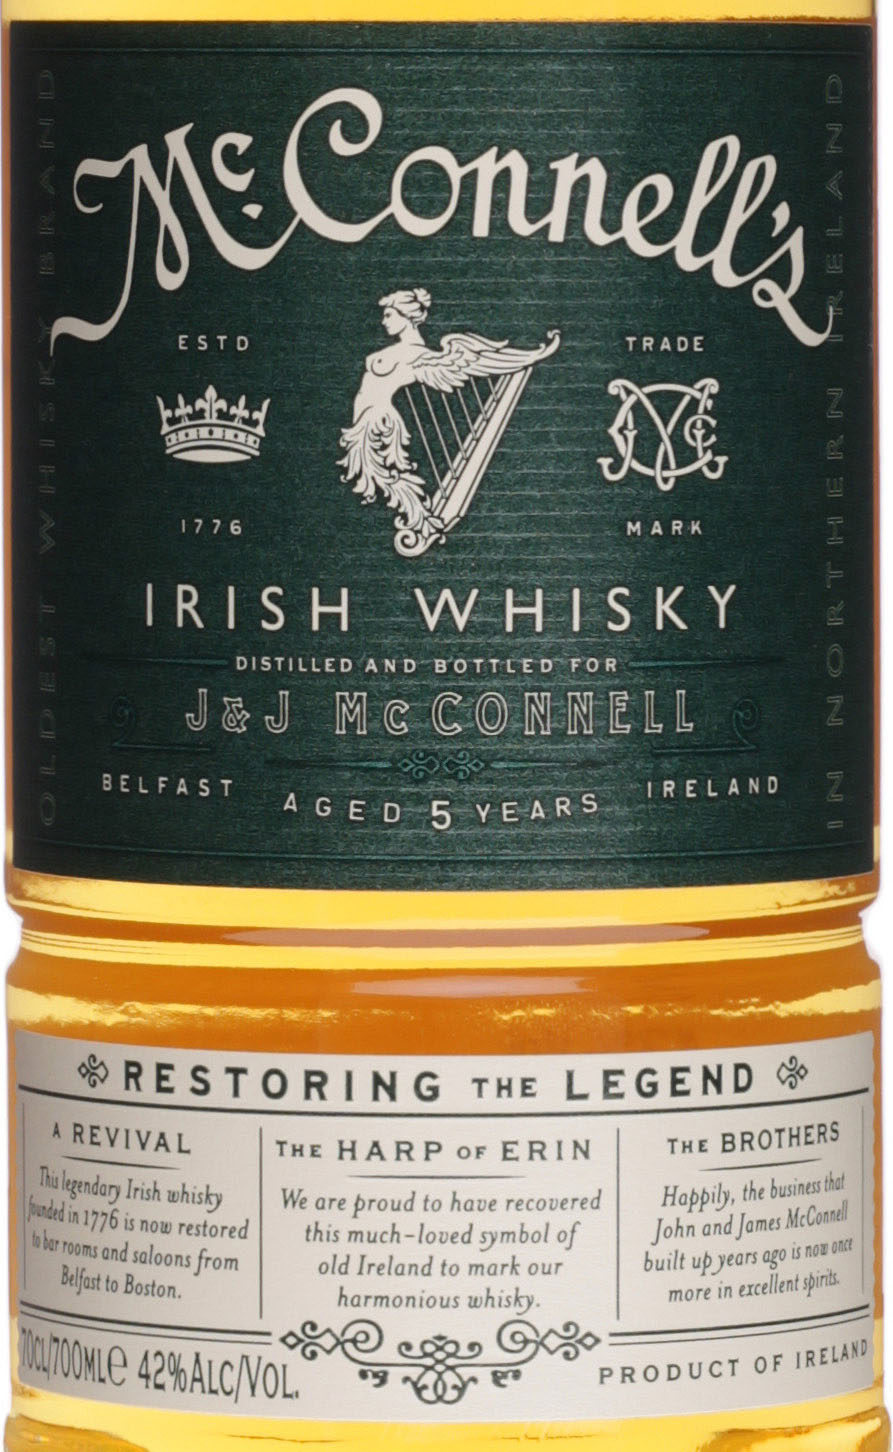 McConnell\'s Irish Whisky günstig und schnell bei uns im